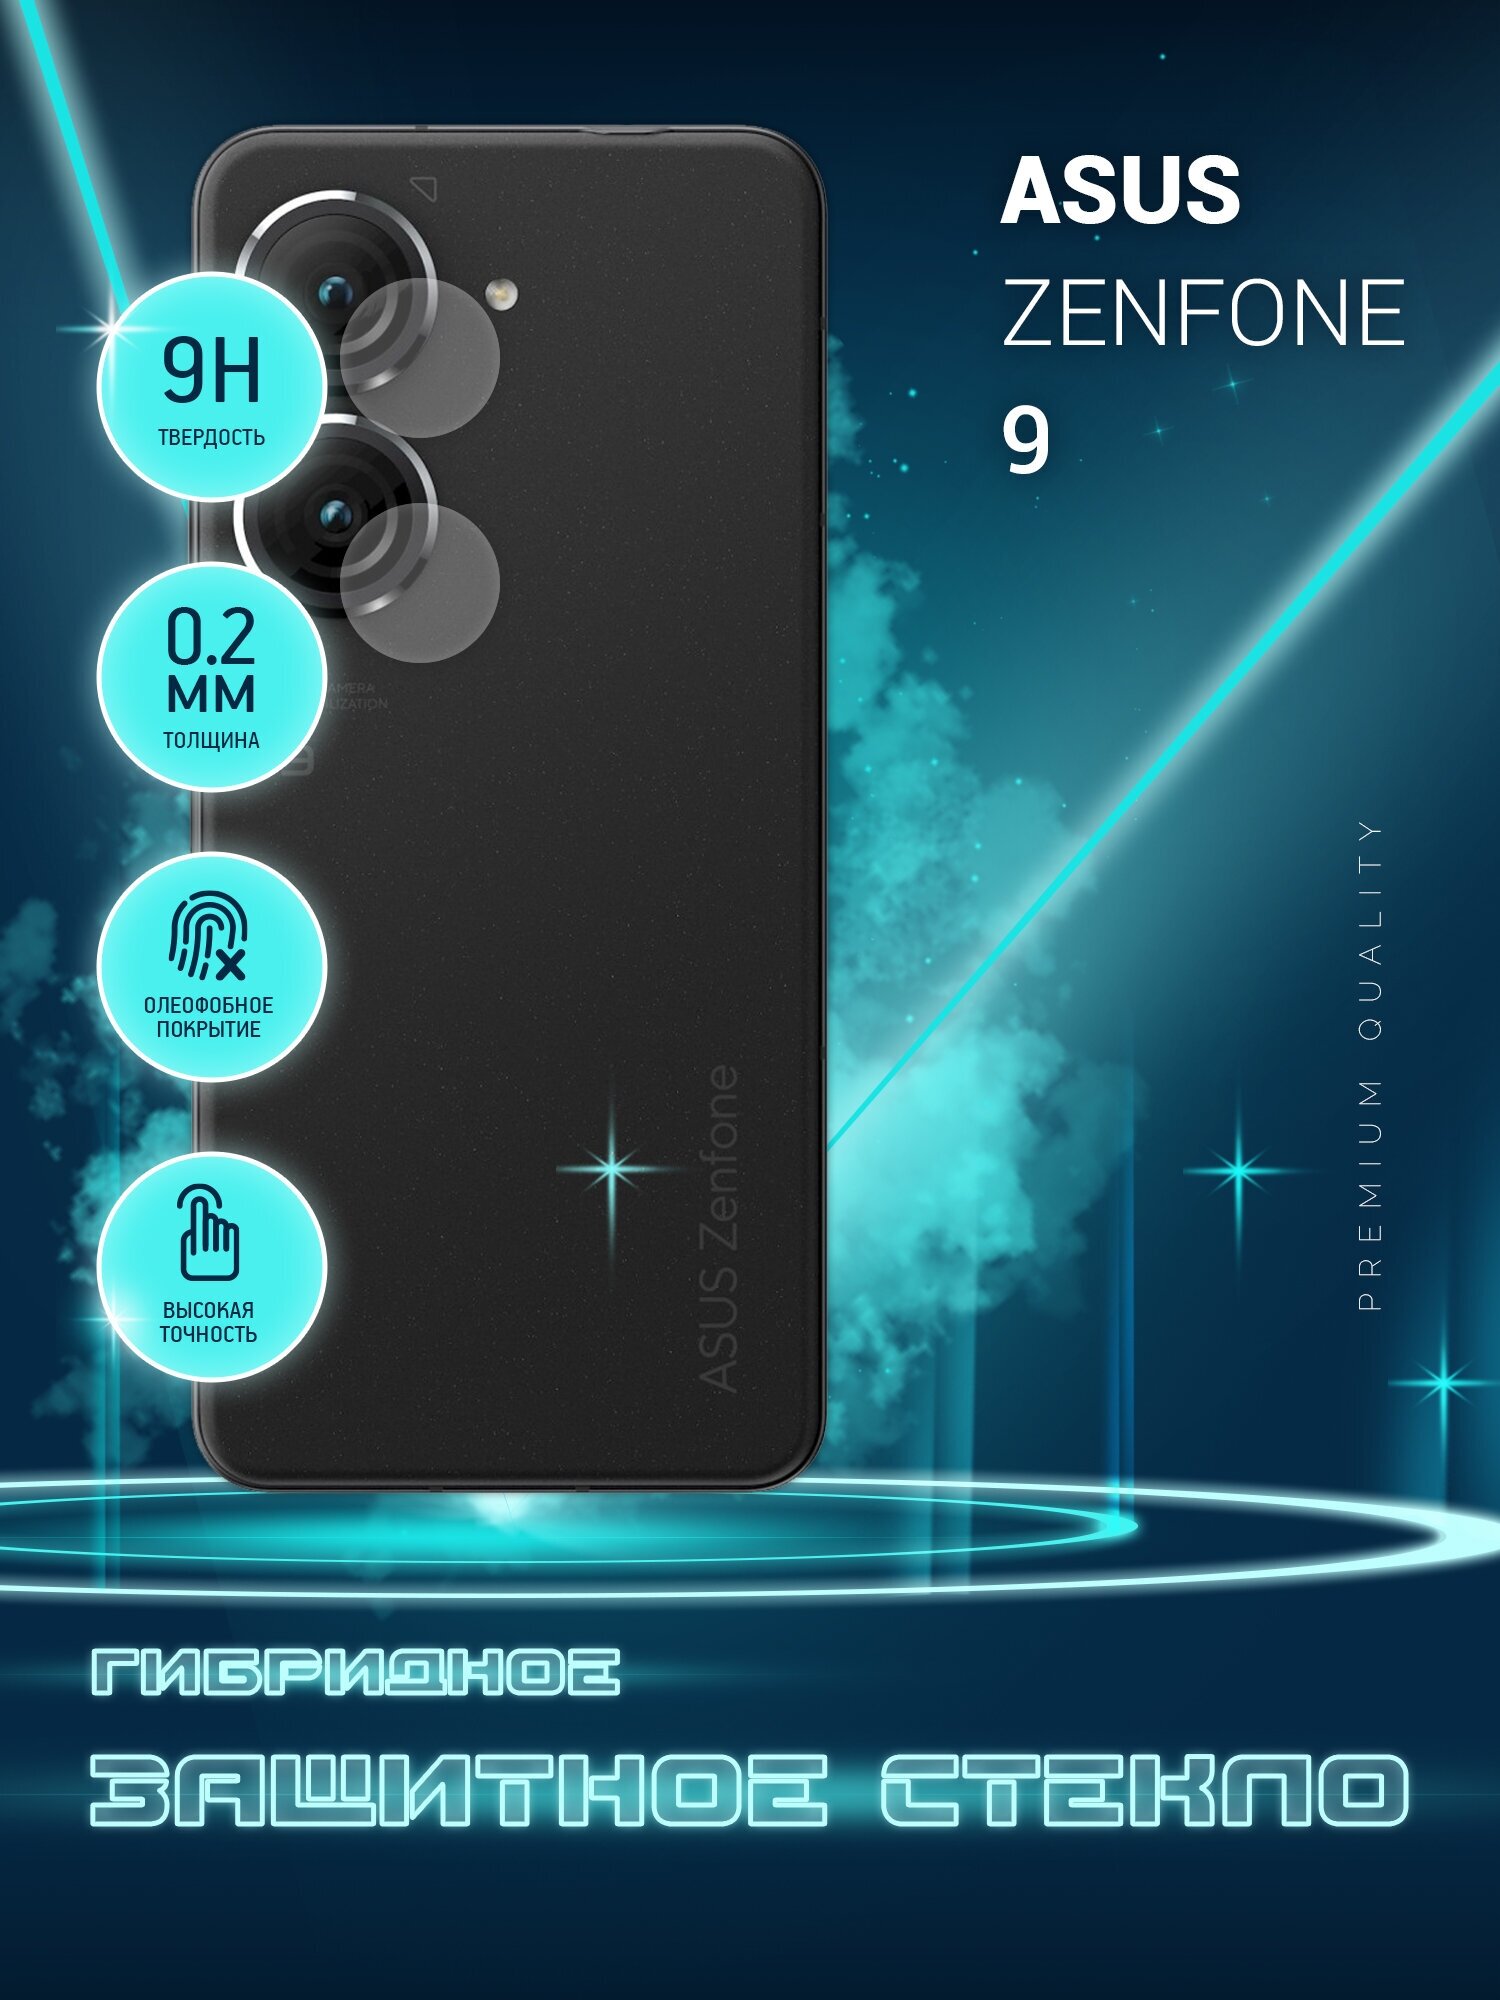 Защитное стекло для Asus Zenfone 9, Асус Зенфон 9 только на камеру, гибридное (пленка + стекловолокно), 2шт, Crystal boost